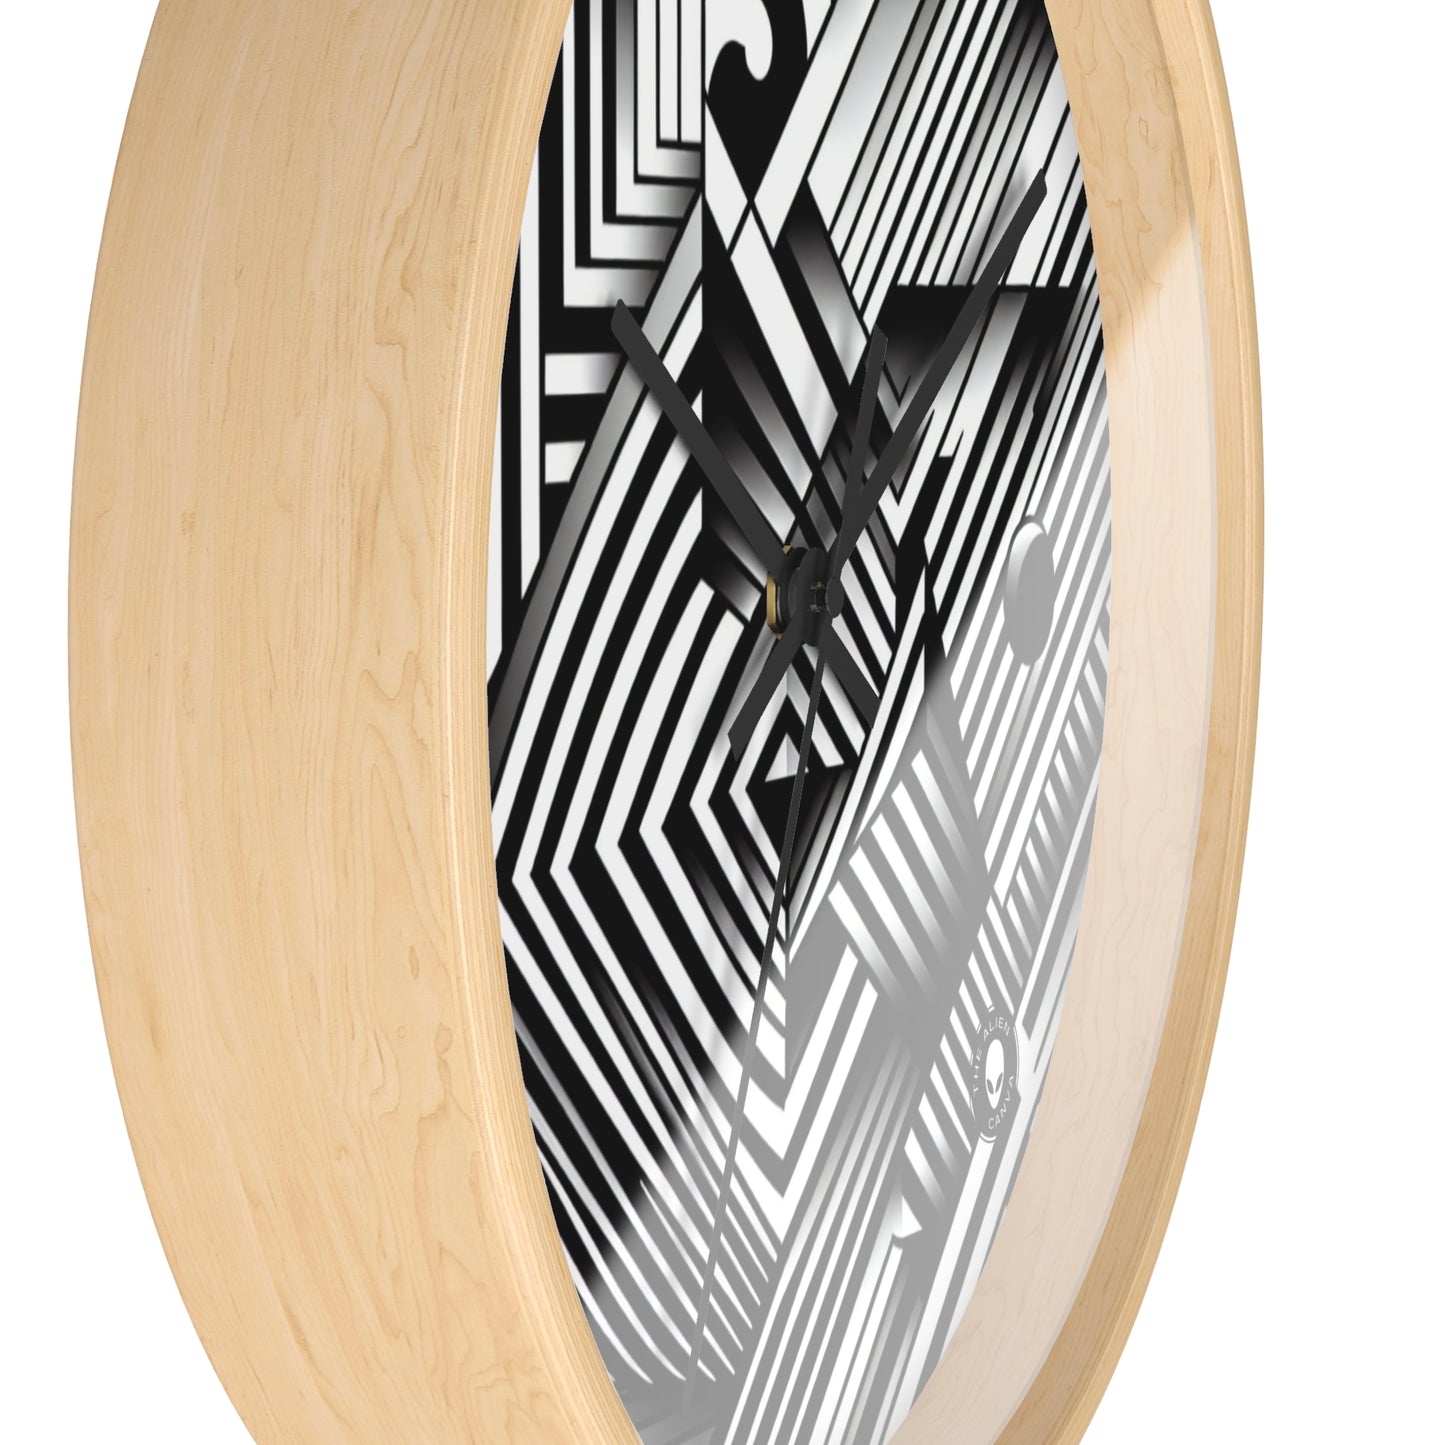 "Swirling Kaleidoscope: A Bold Op Art Vortex" - The Alien Wall Clock Optical Art (Op Art)